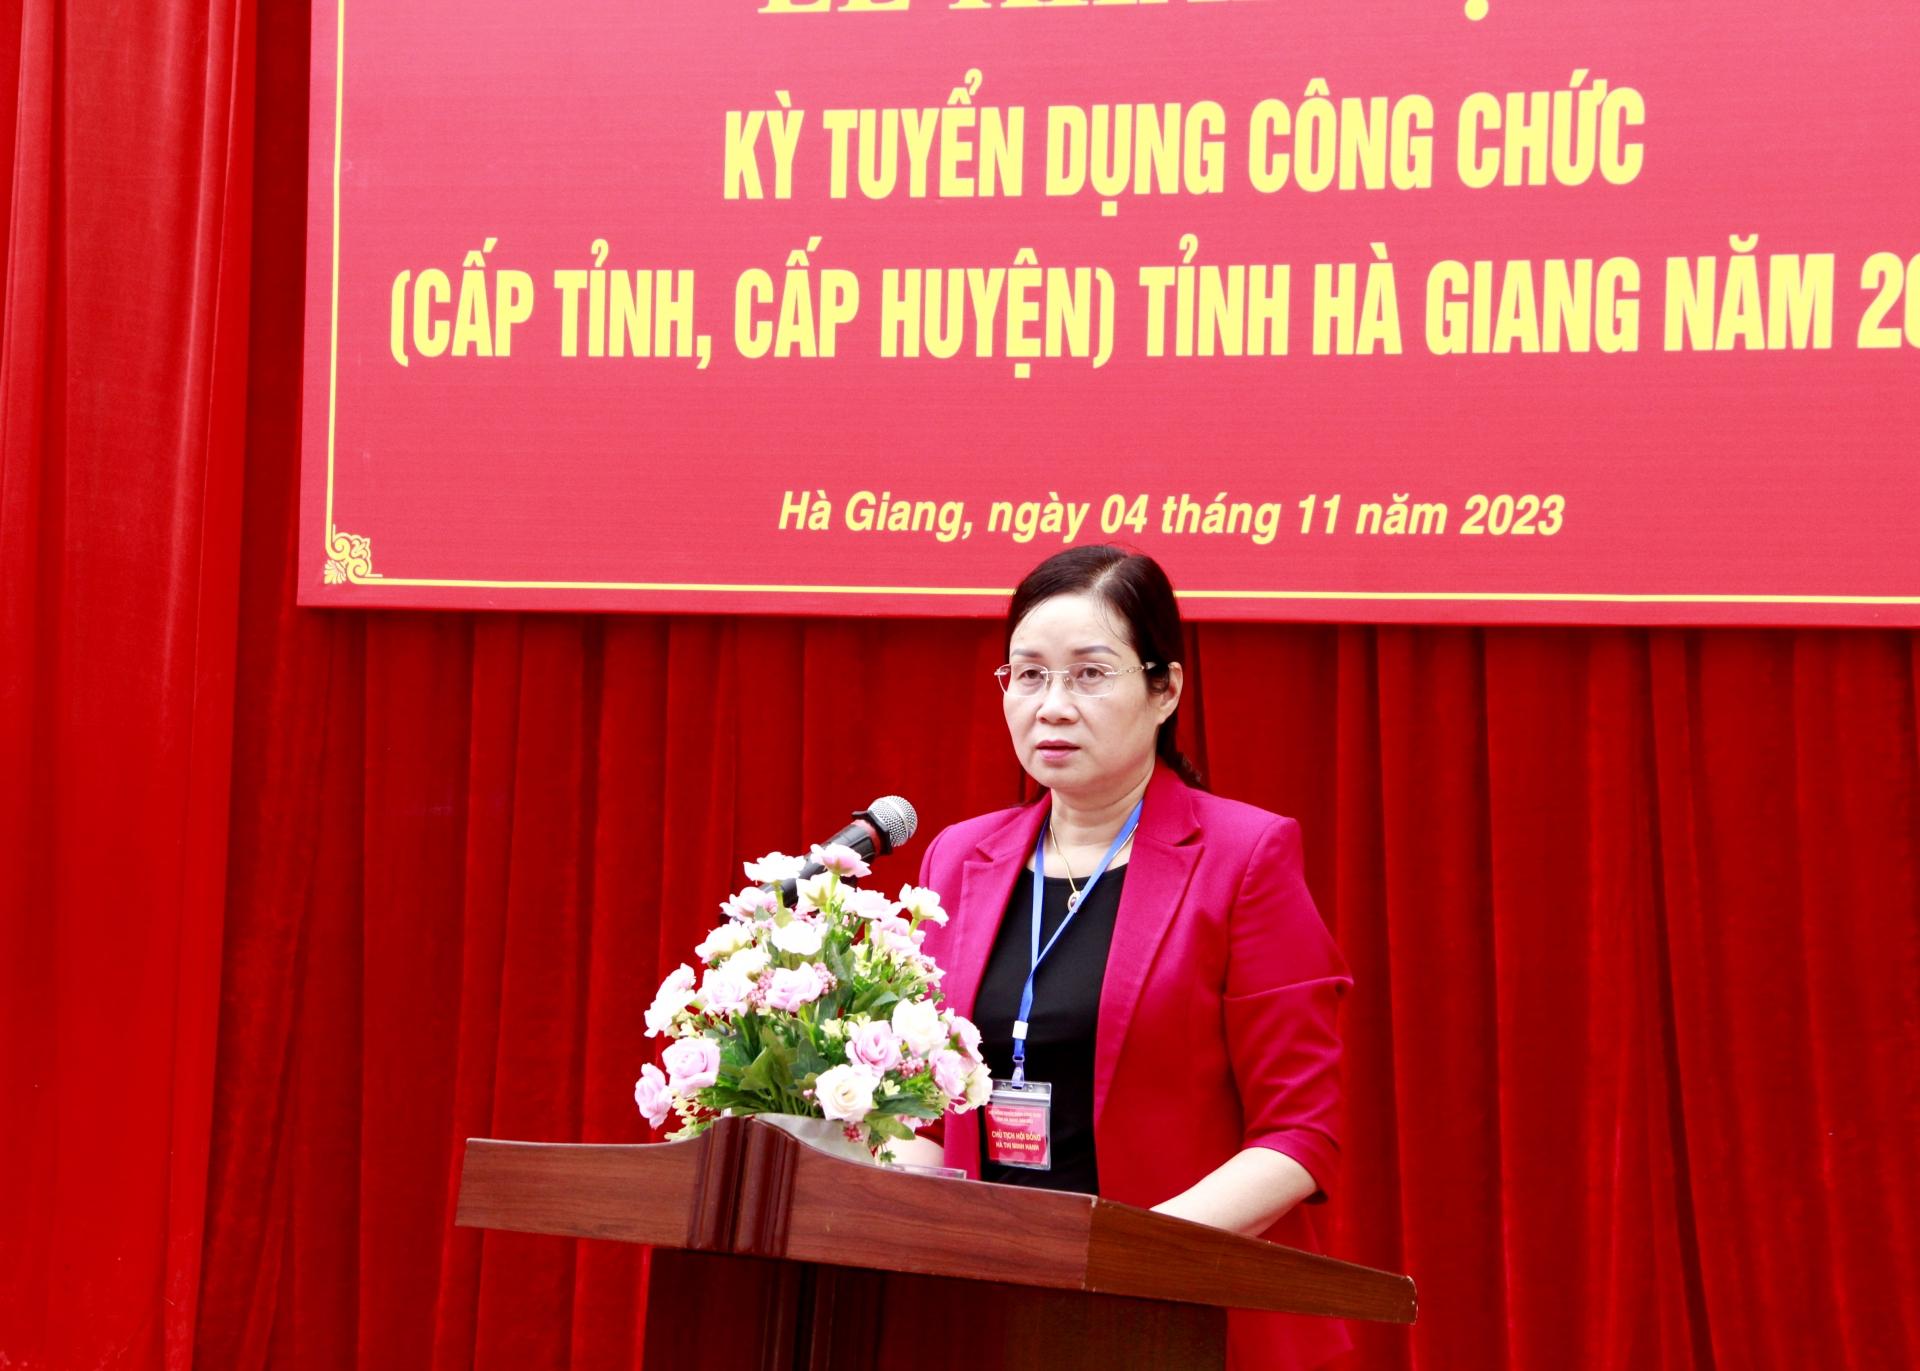 Phó Chủ tịch UBND tỉnh Hà Thị Minh Hạnh phát biểu khai mạc Kỳ tuyển dụng công chức tỉnh Hà Giang năm 2023.